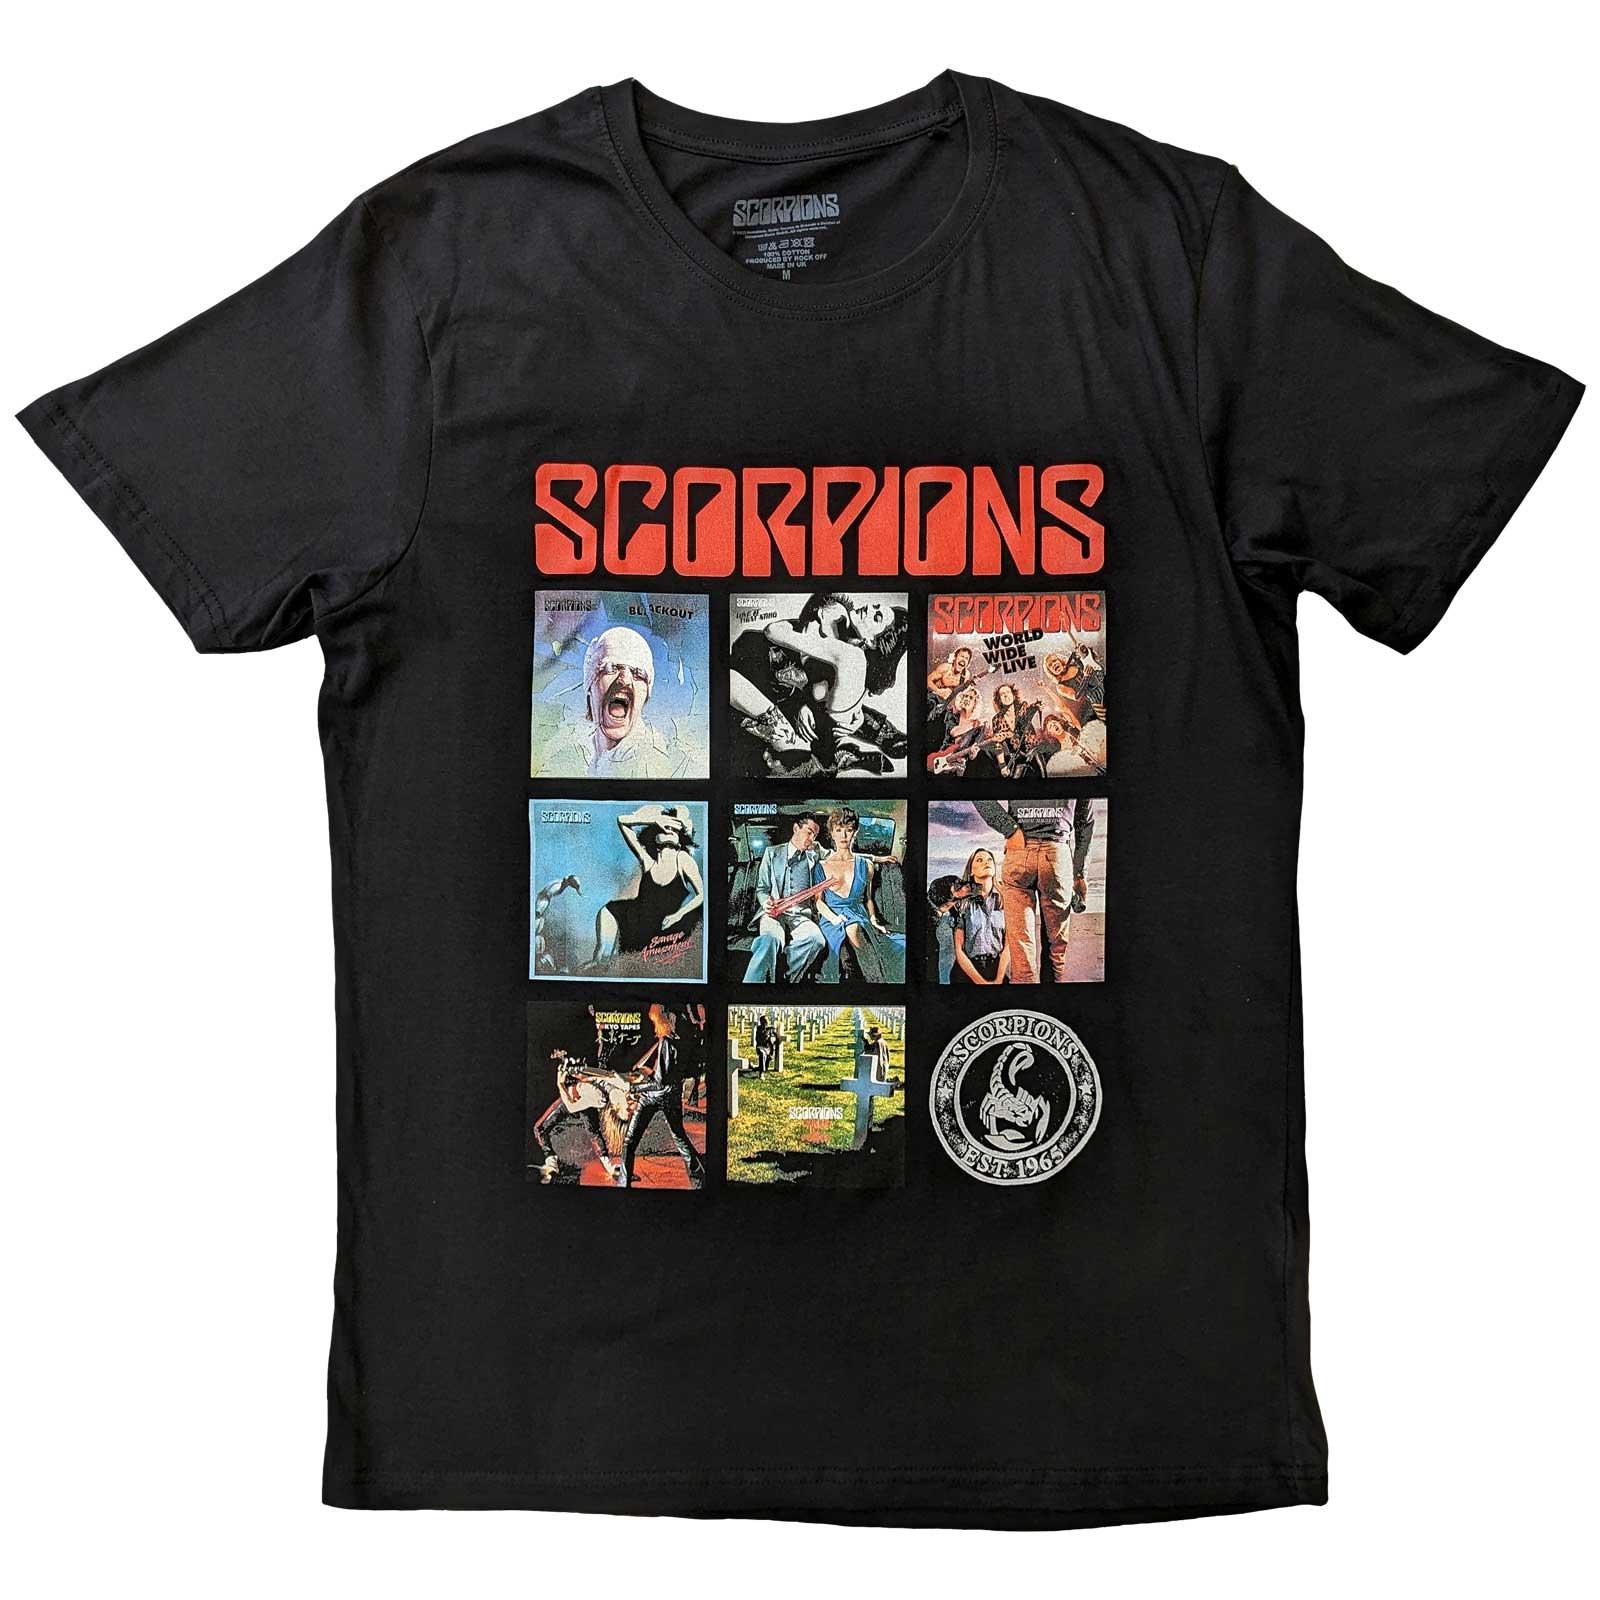 (スコーピオンズ) Scorpions オフィシャル商品 ユニセックス Remastered Tシャツ コットン 半袖 トップス 【海外通販】